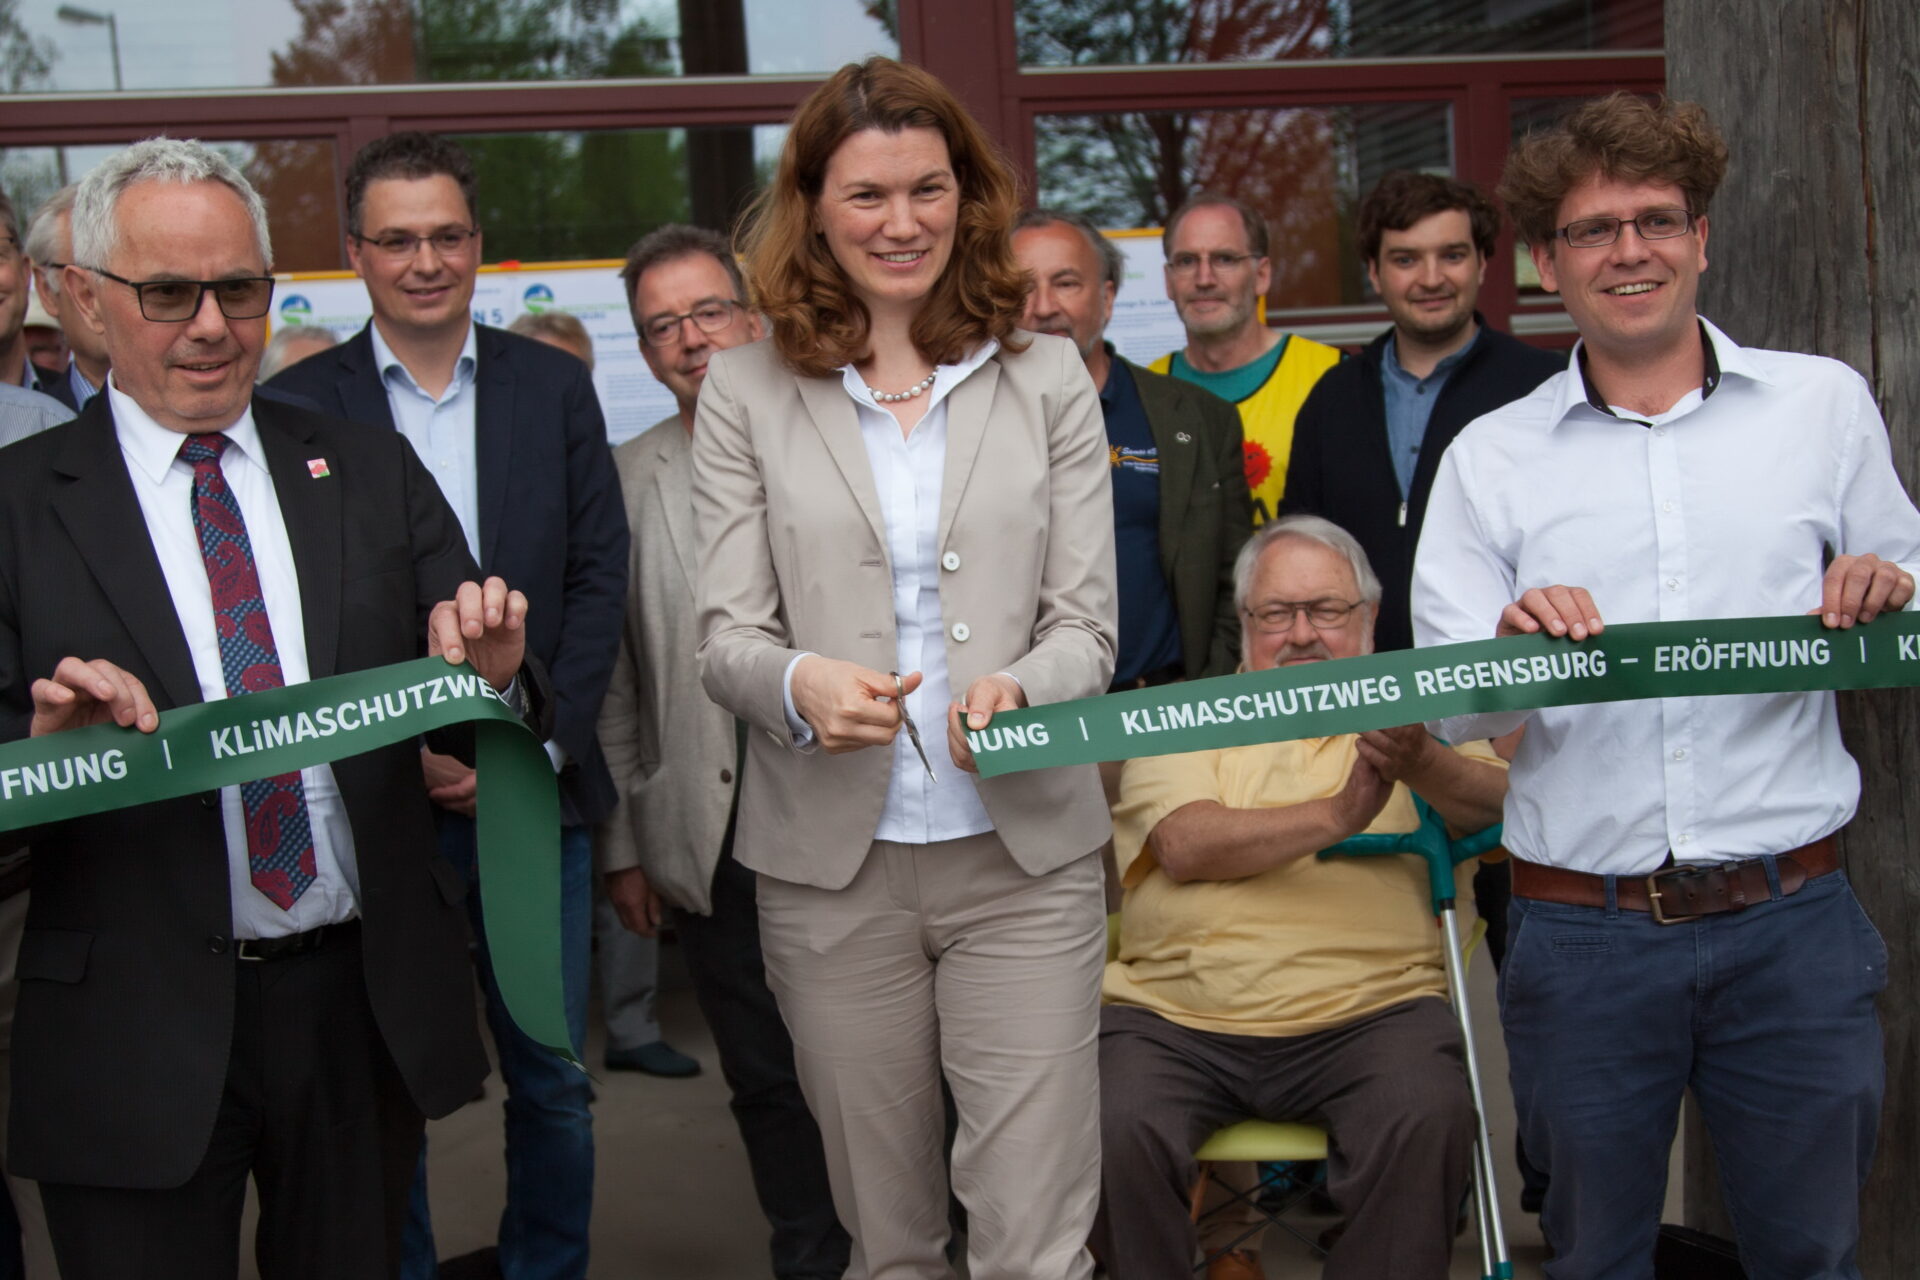 Eröffnung des Klimaschutzweg Regensburg